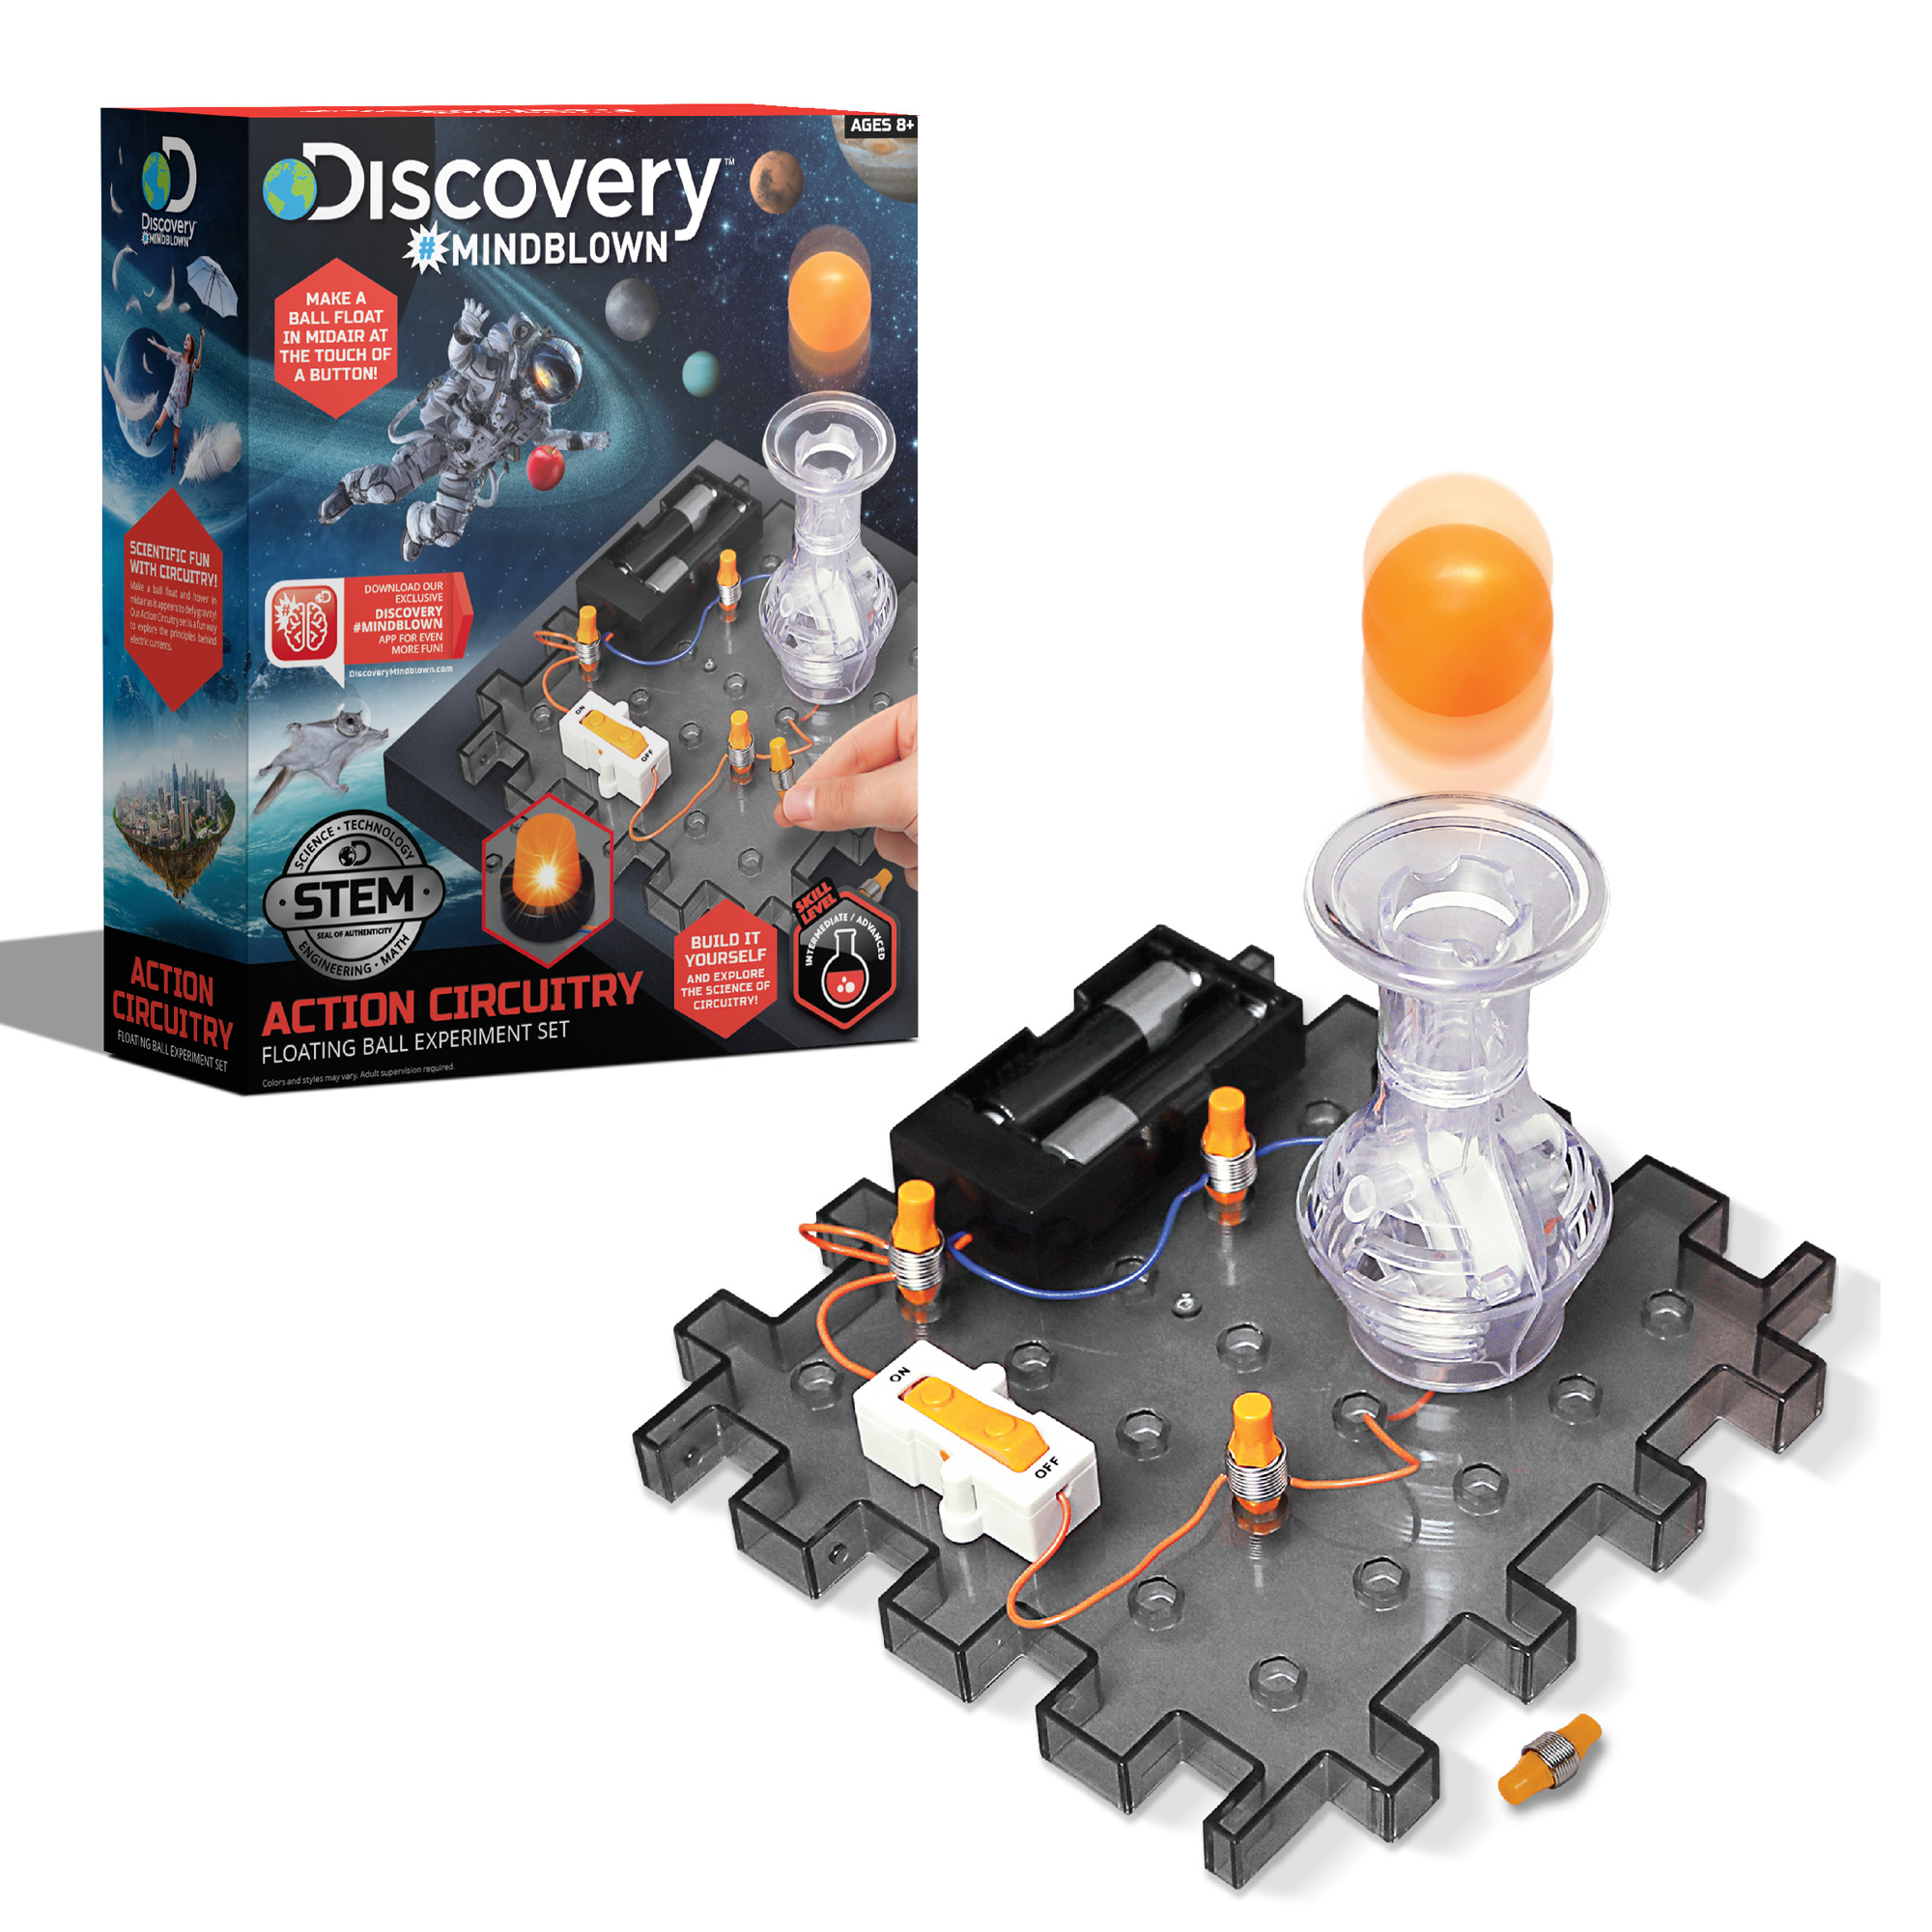 Kit esperimenti con i circuiti, palla volante - Discovery Mindblown